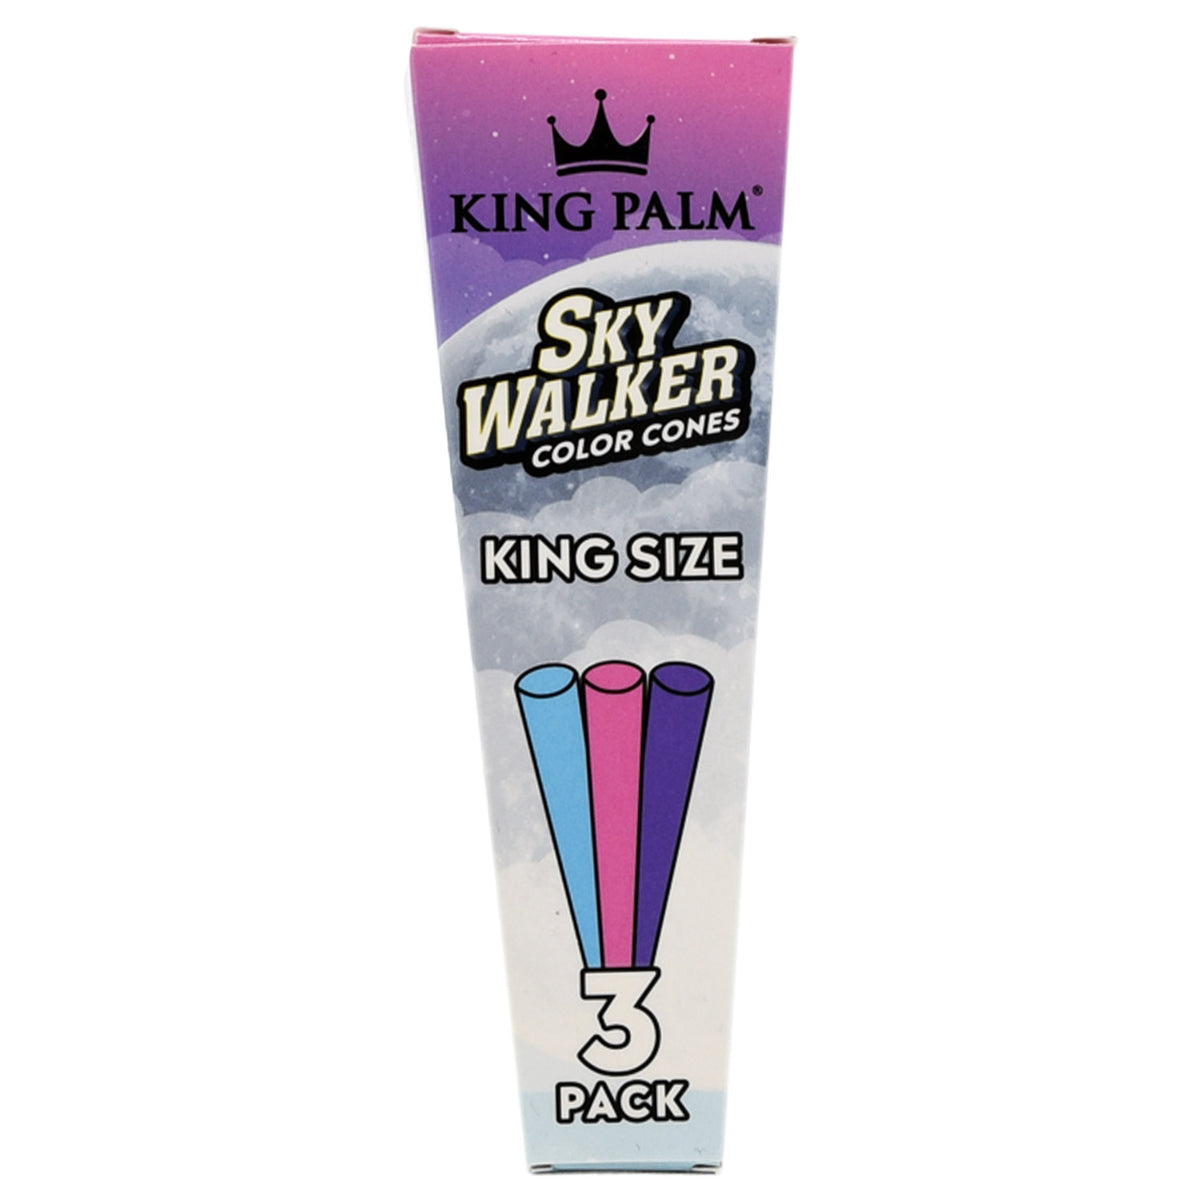 King Palm King Size Skywalker Color Cones 3pck